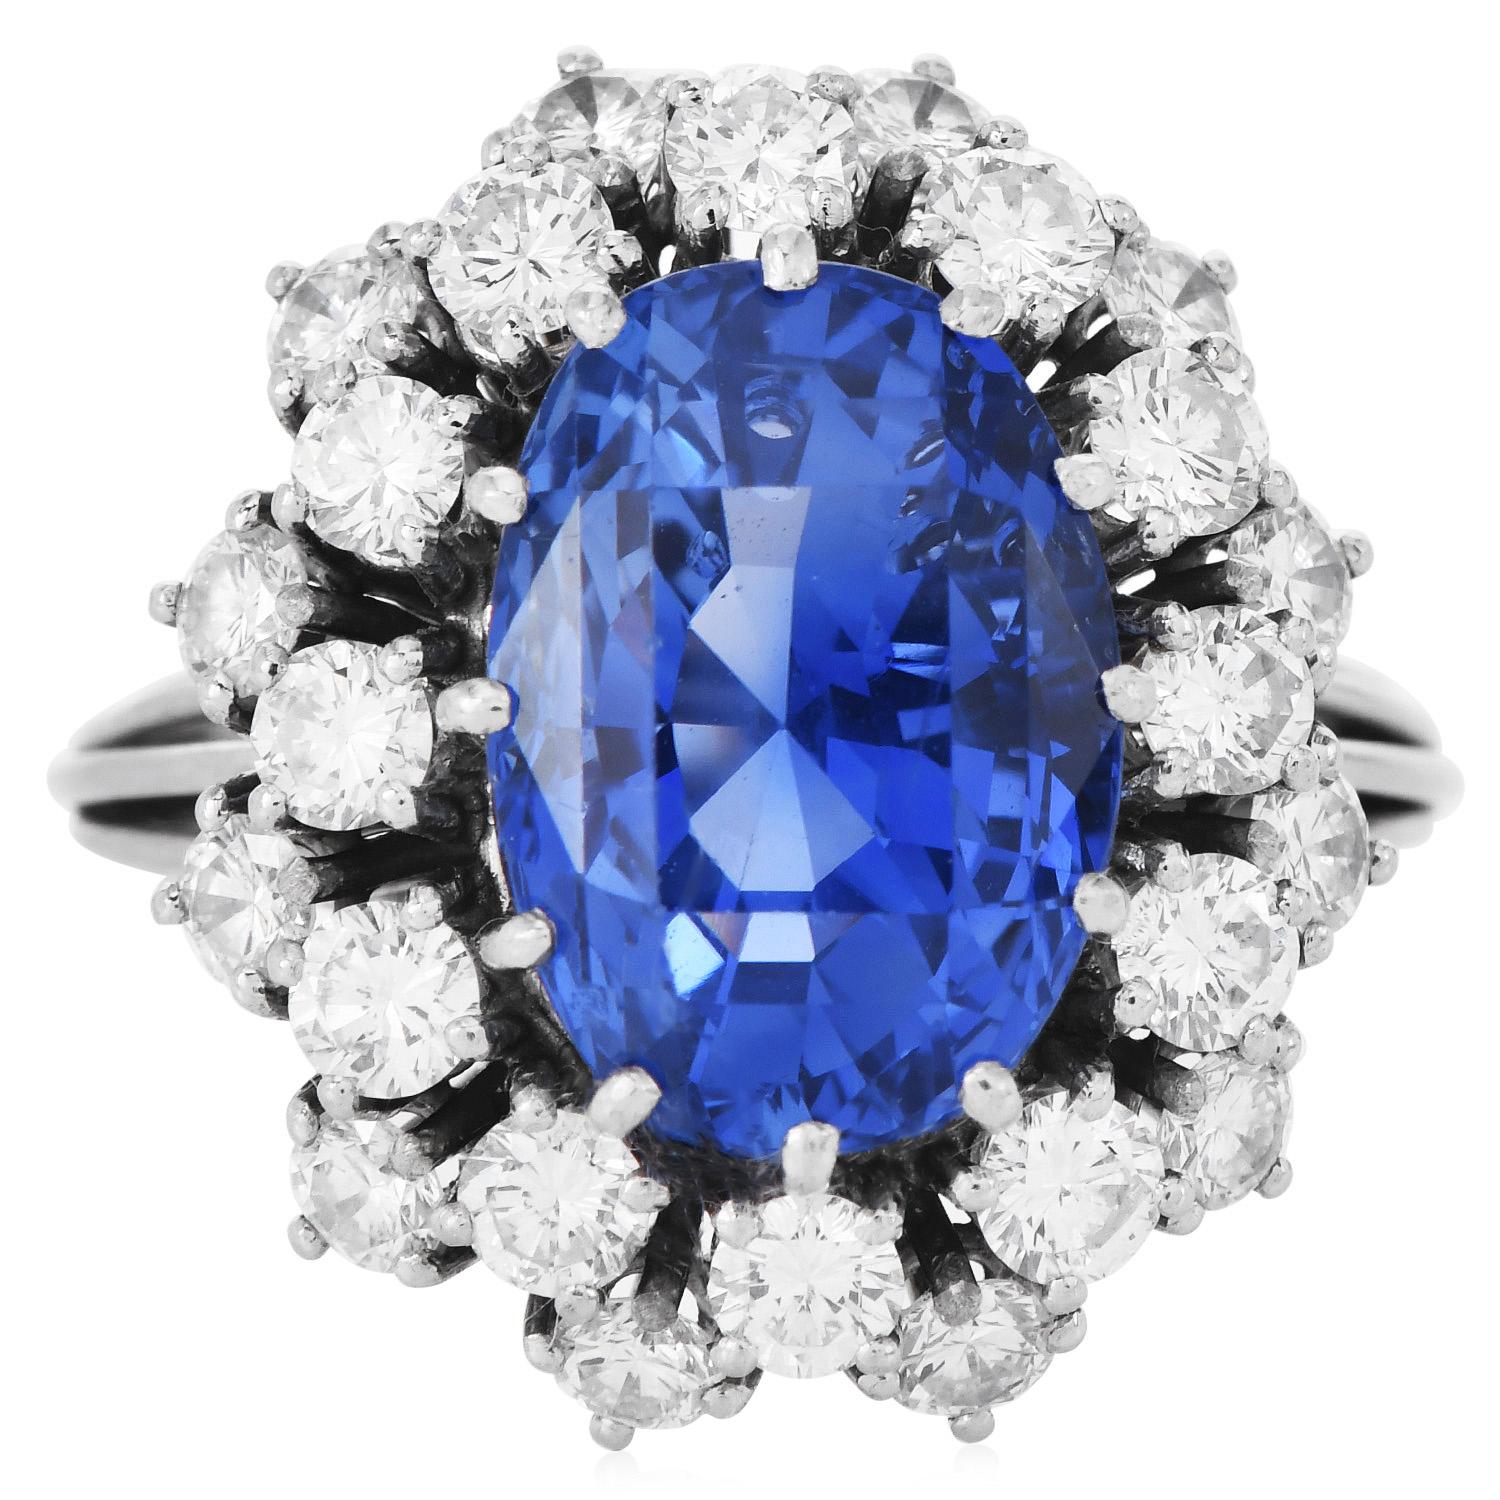 Extra Clean Natural No Heat Sri Lanka GIA Oval Brilliant-cut Sapphire 10.50cttw Diamond Royal Ring.

Wir präsentieren einen wunderschönen Diamant-Halo-Cocktailring im Lady-Diana-Stil, handgefertigt in Platin.

In der Mitte ein GIA-zertifizierter